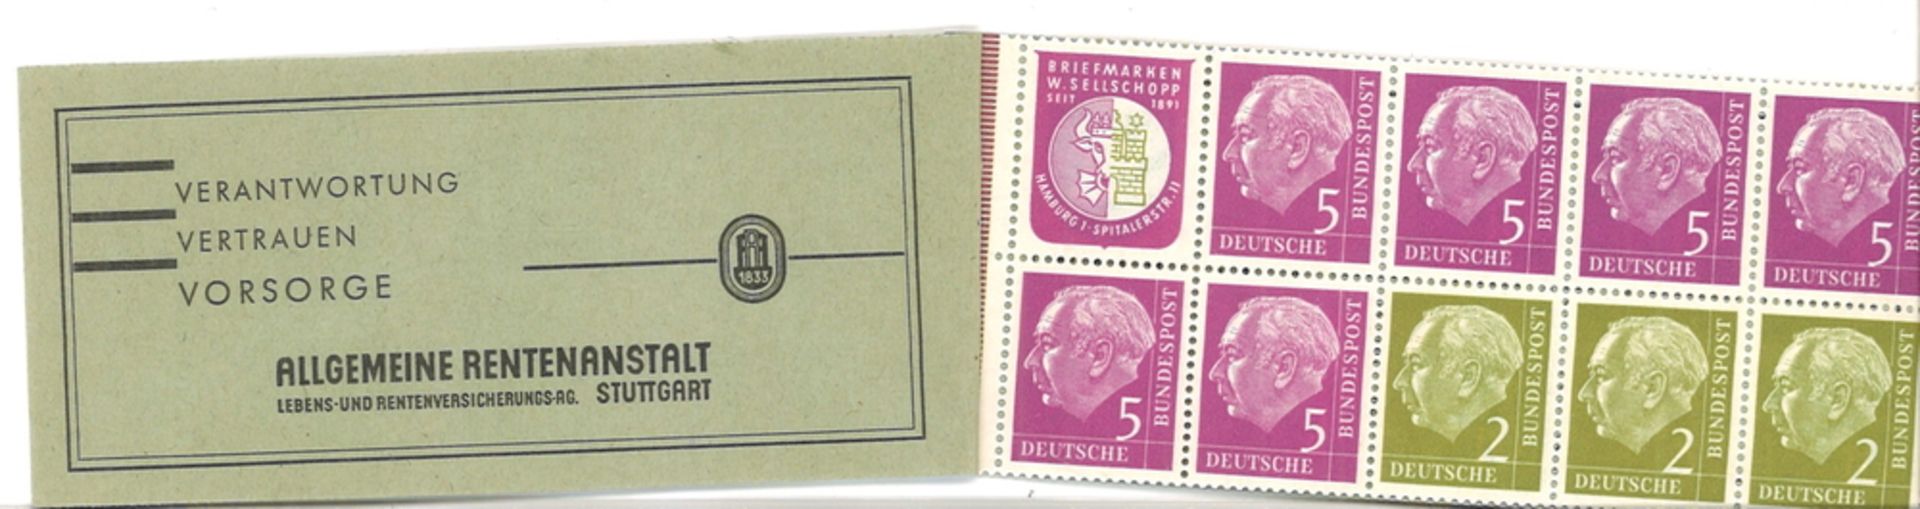 Markenheftchen BRD 1956. MiNr. MH 3, postfrisch - Image 2 of 2